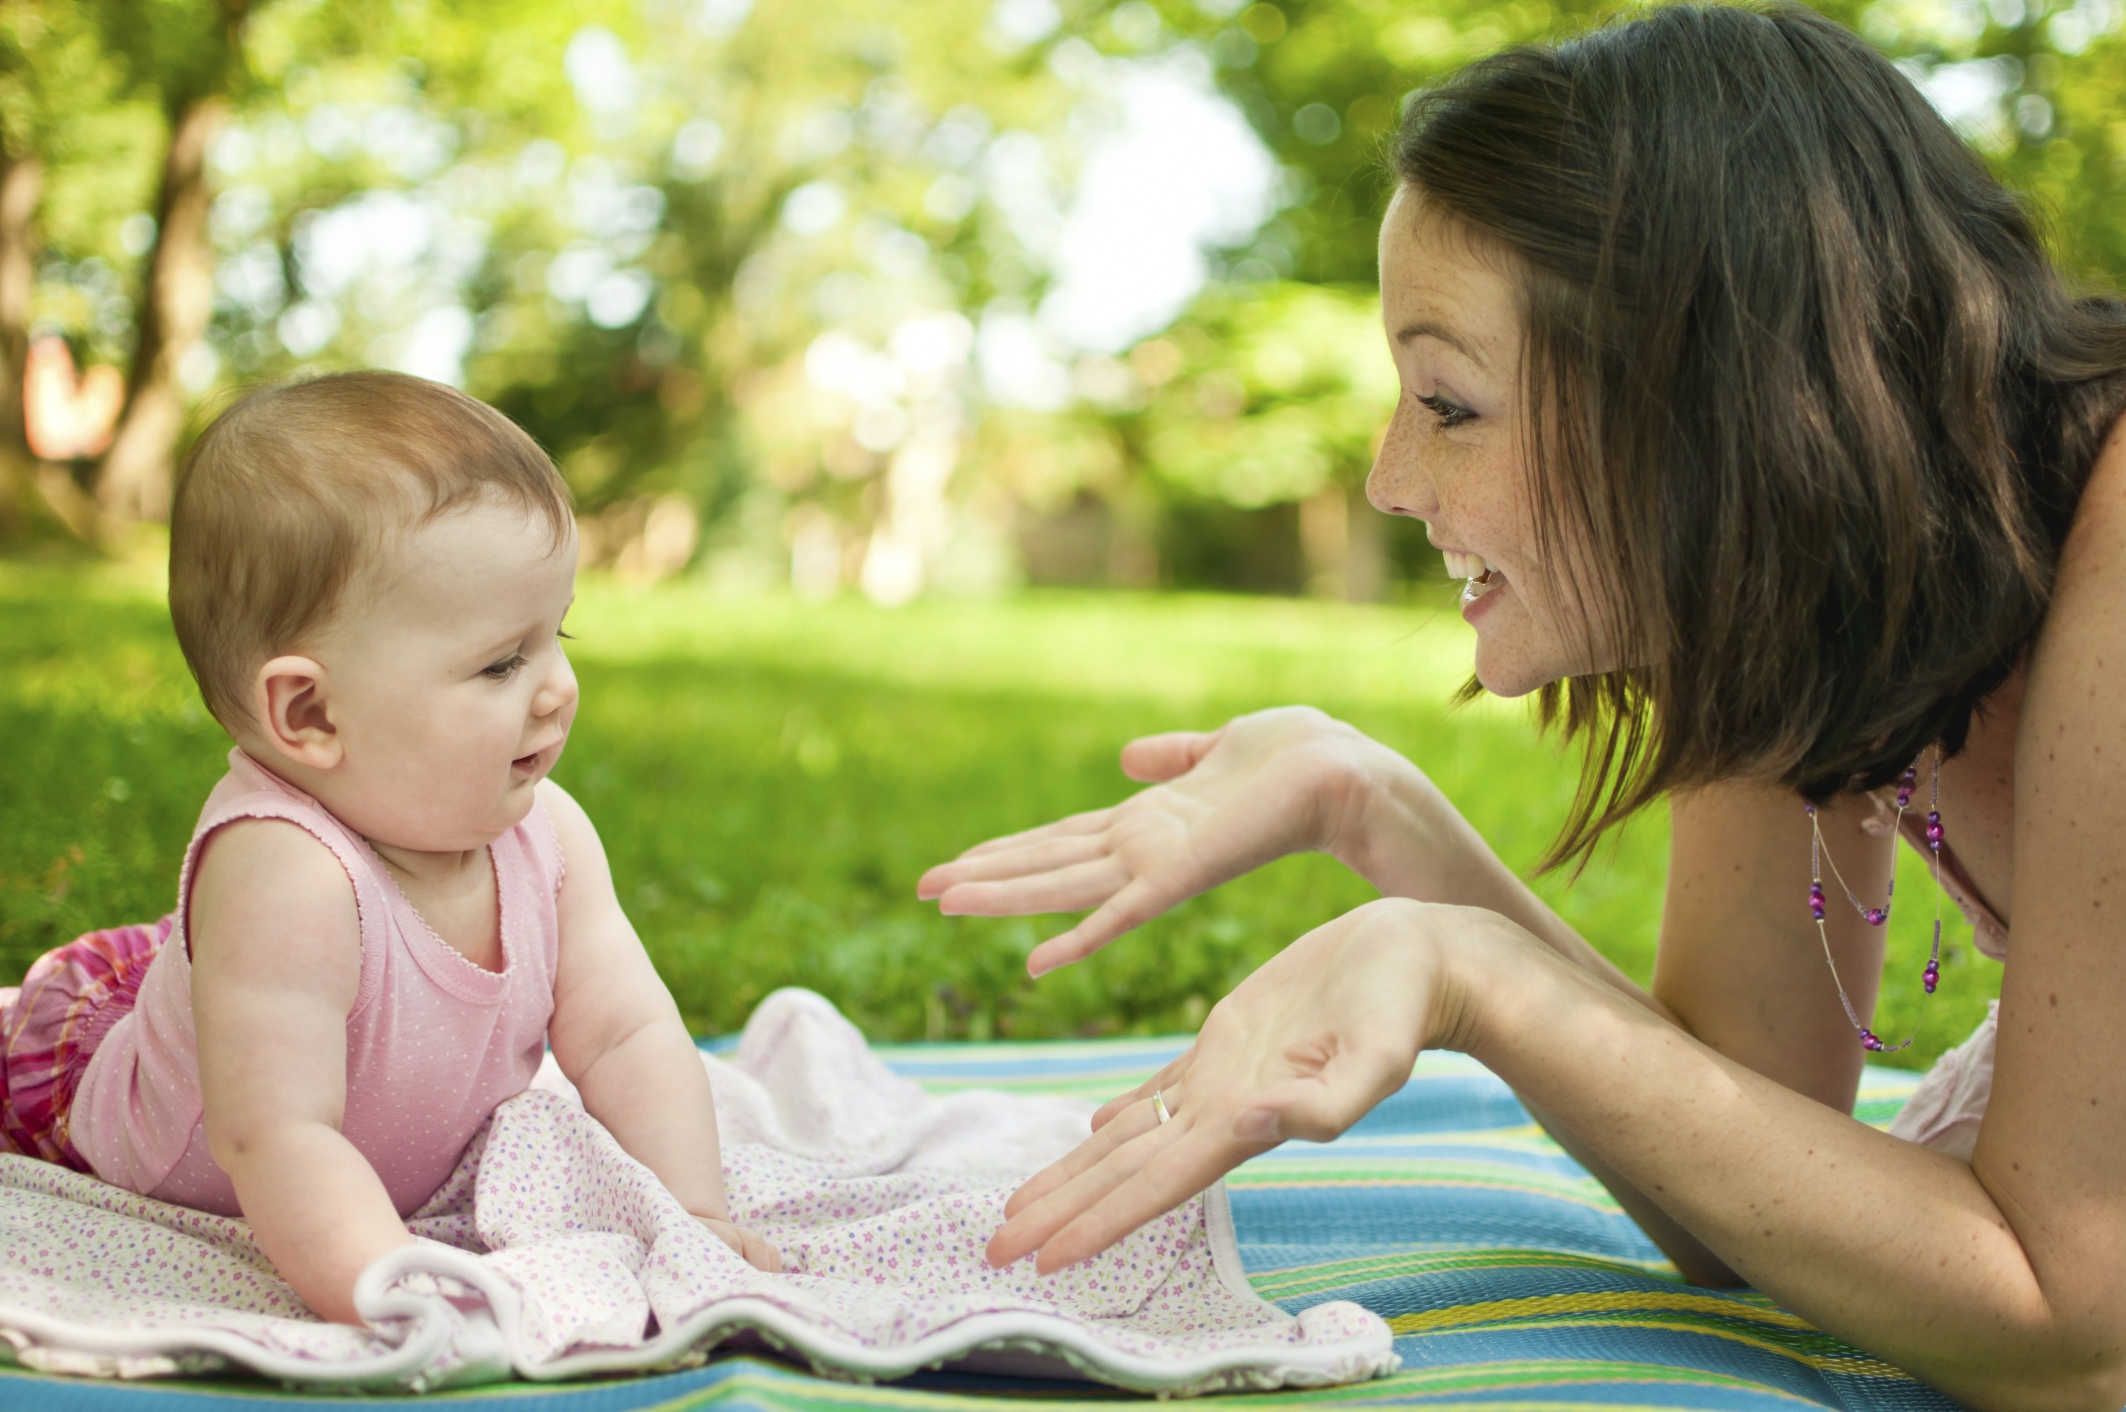 3 Positive Ways Breastfeeding and Motherhood Change Your Brain